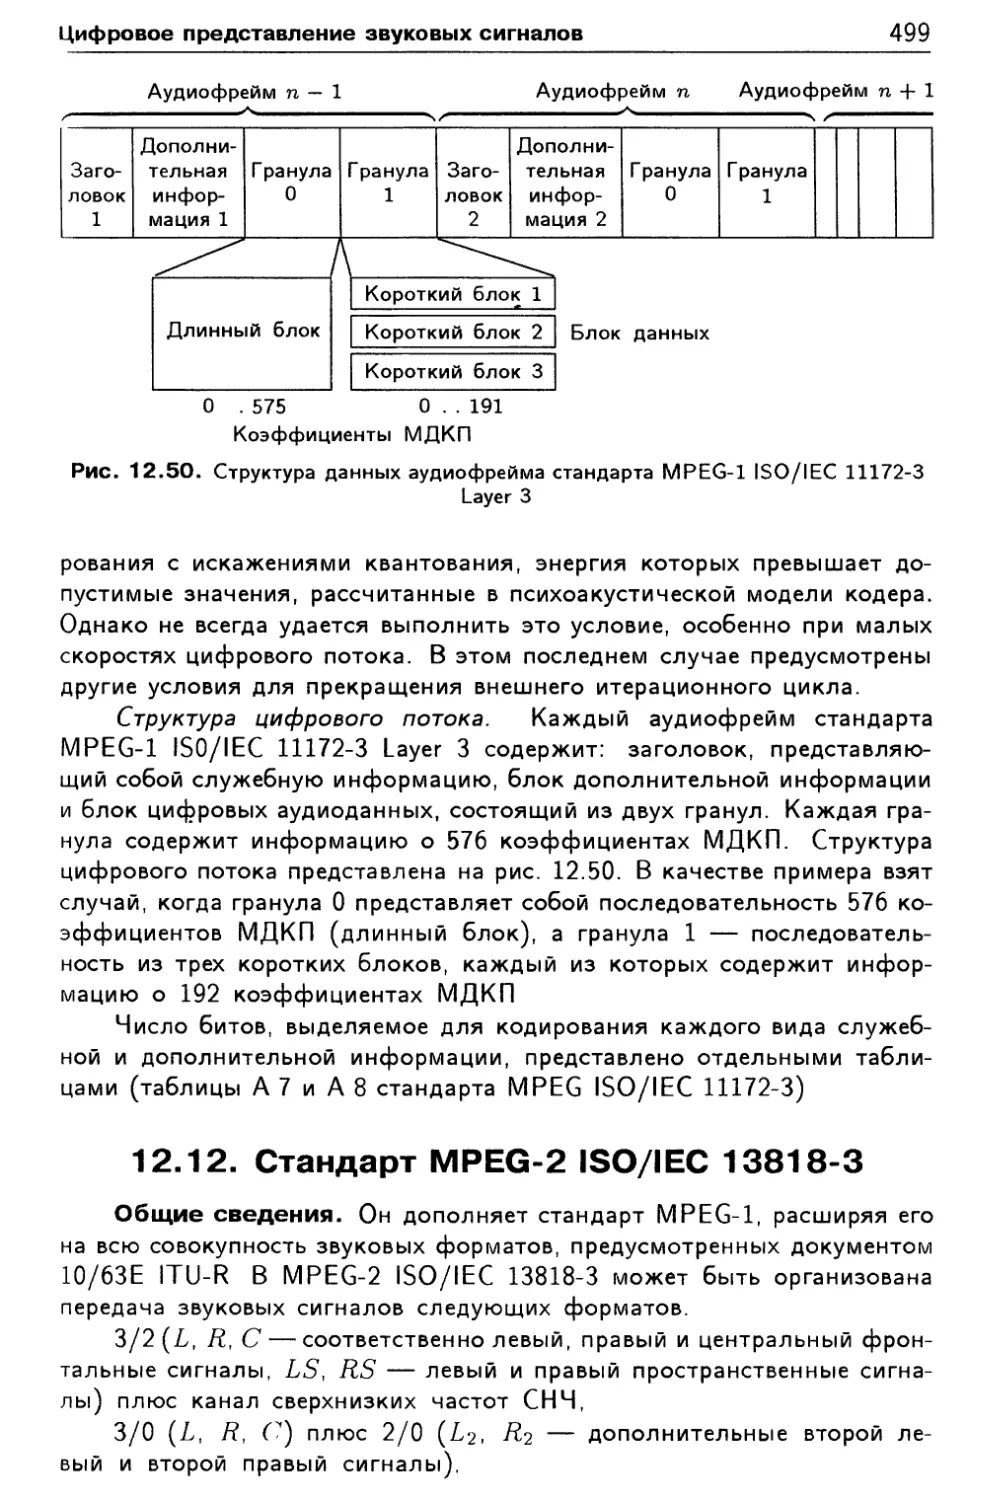 12.12 Стандарт MPEG-2 ISO/IEC 13818-3